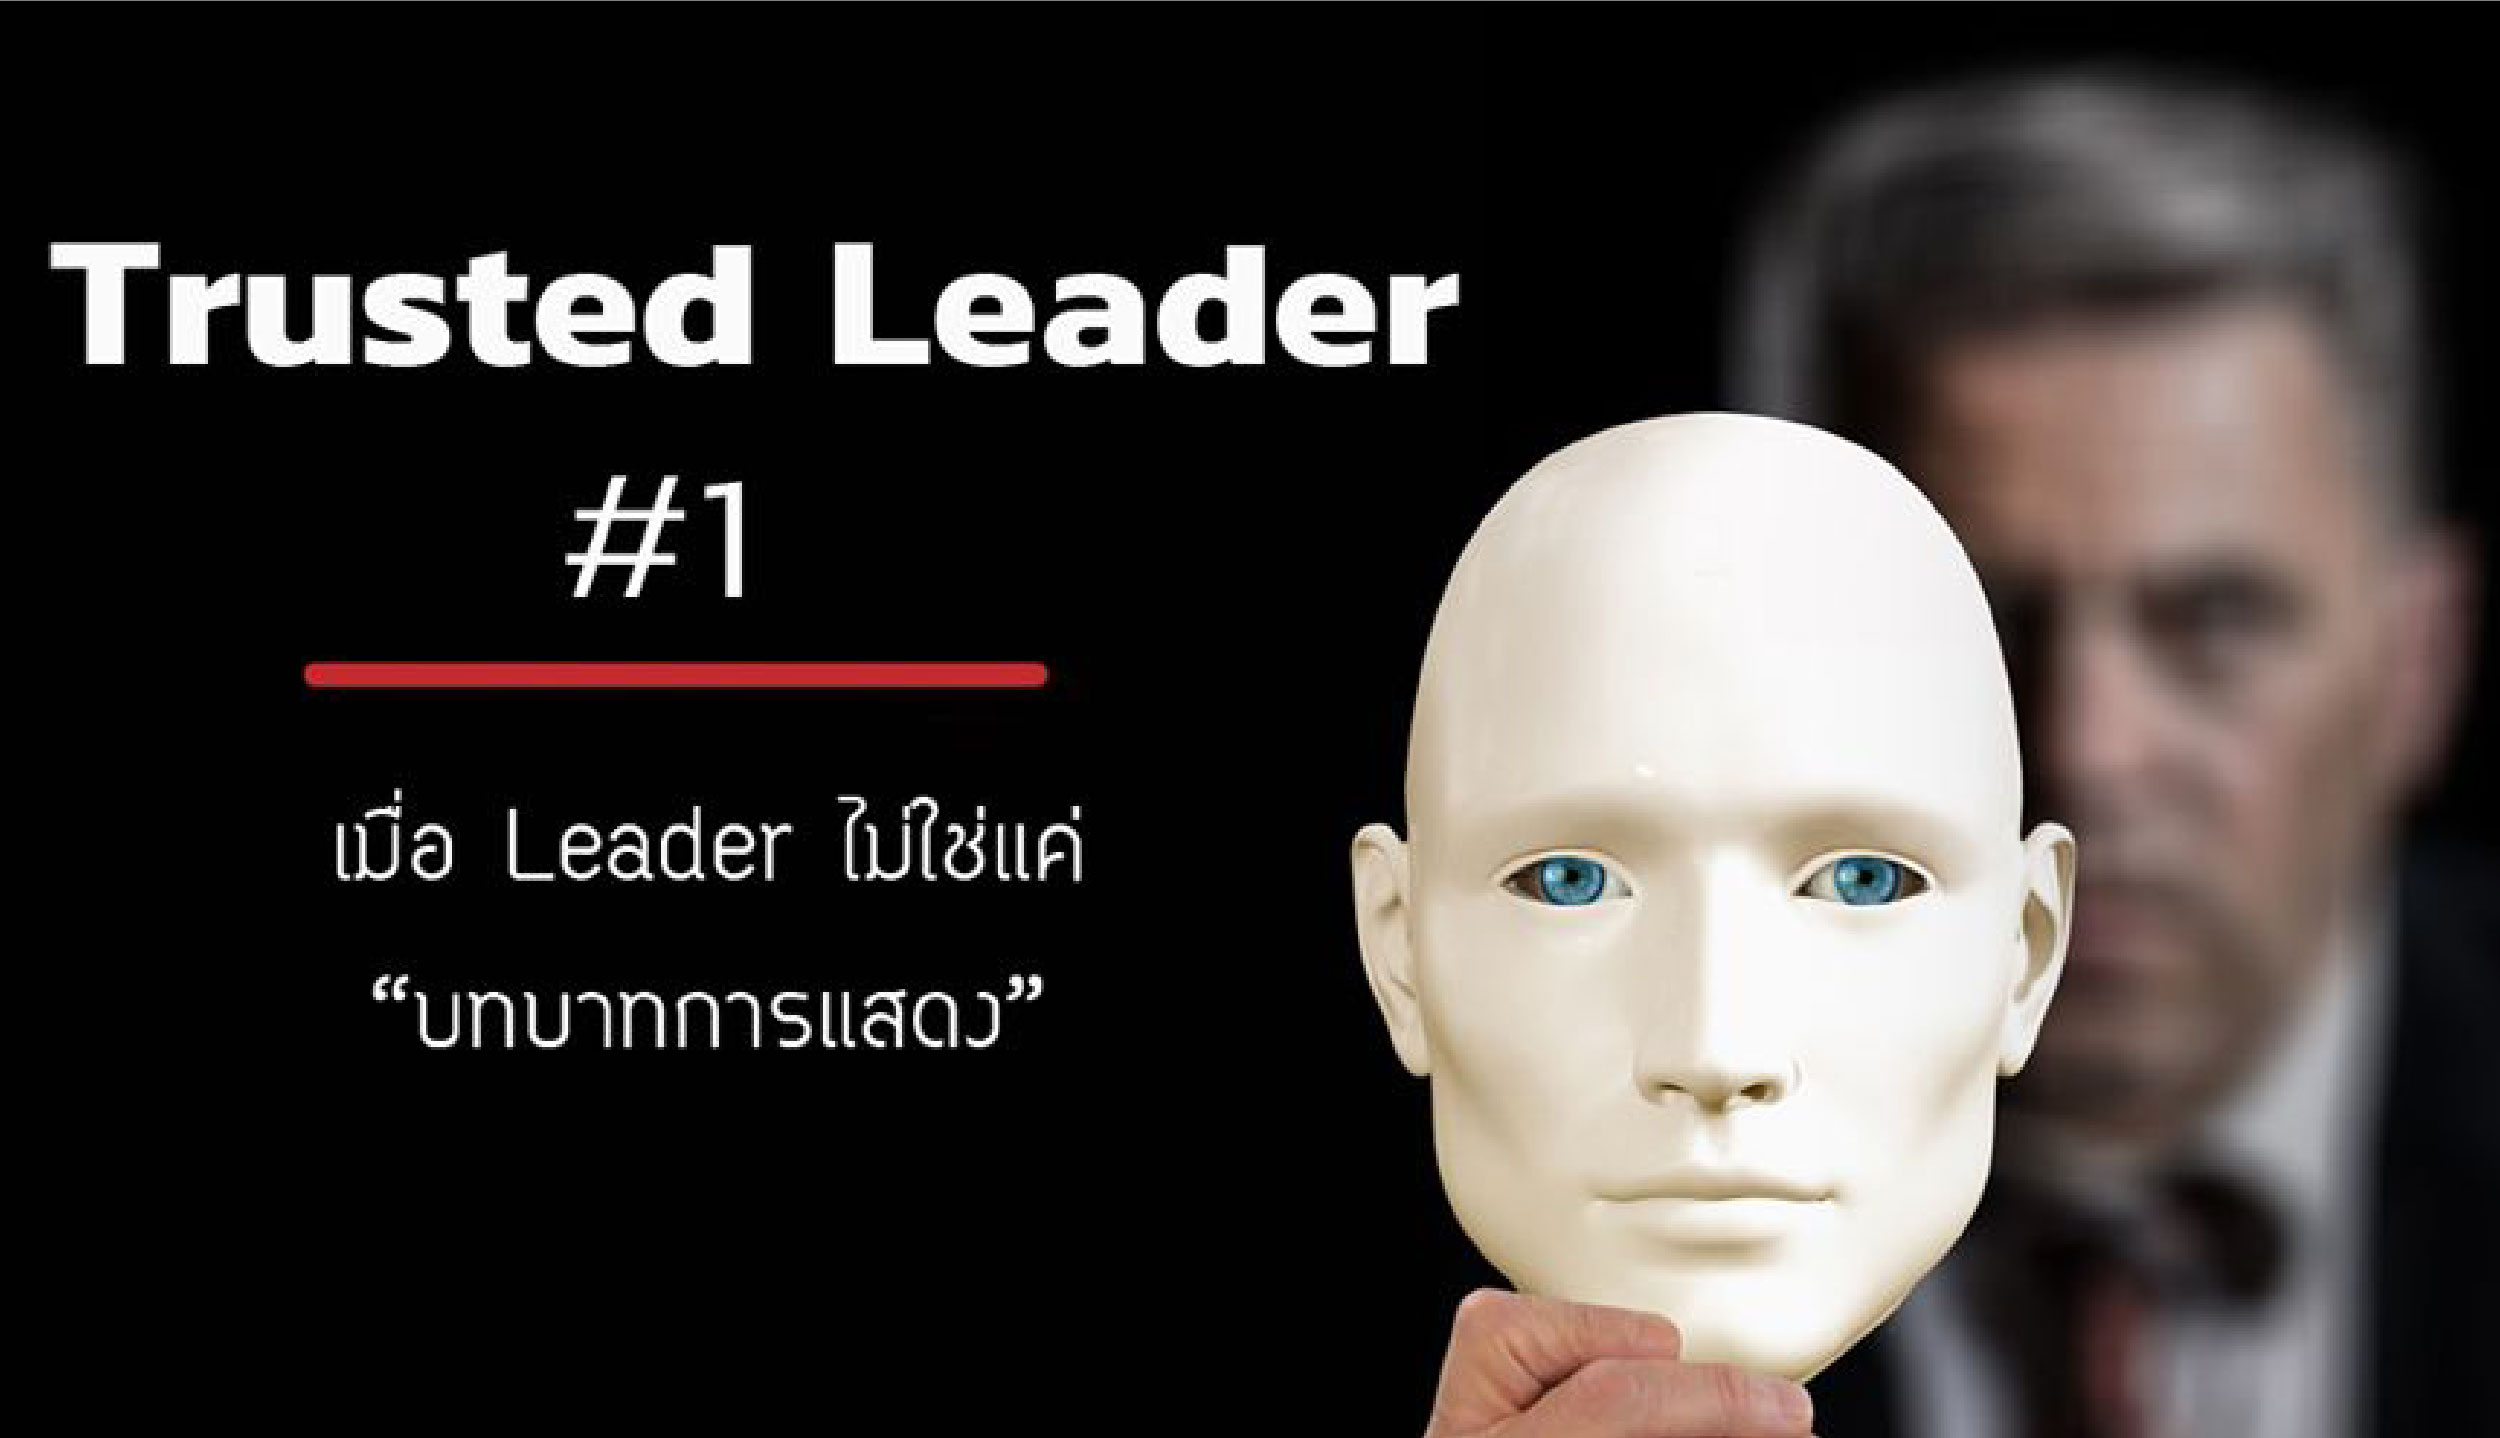 ถอดรหัส Trusted Leader ถอดรหัส Trusted Leader เมื่อ Leader 
ต้องนำด้วยหัวใจ ไม่ใช่แค่สั่งการ (ตอนที่ 1)
อย่างที่ Simon Sinek เคยกล่าวไว้ว่า “A boss has the title, a leader has a people”
ถ้ามีคำถามว่าในชีวิตการทำงานที่ผ่านมา เราแต่ละคน มีคนที่เราเรียกได้ว่า 
เป็น My trusted leader หรือผู้นำที่เราไว้วางใจ 
พร้อมจะเดินไปในทิศทางที่ผู้นำวางไว้ได้อย่างไม่เกี่ยงงอนซักกี่คน